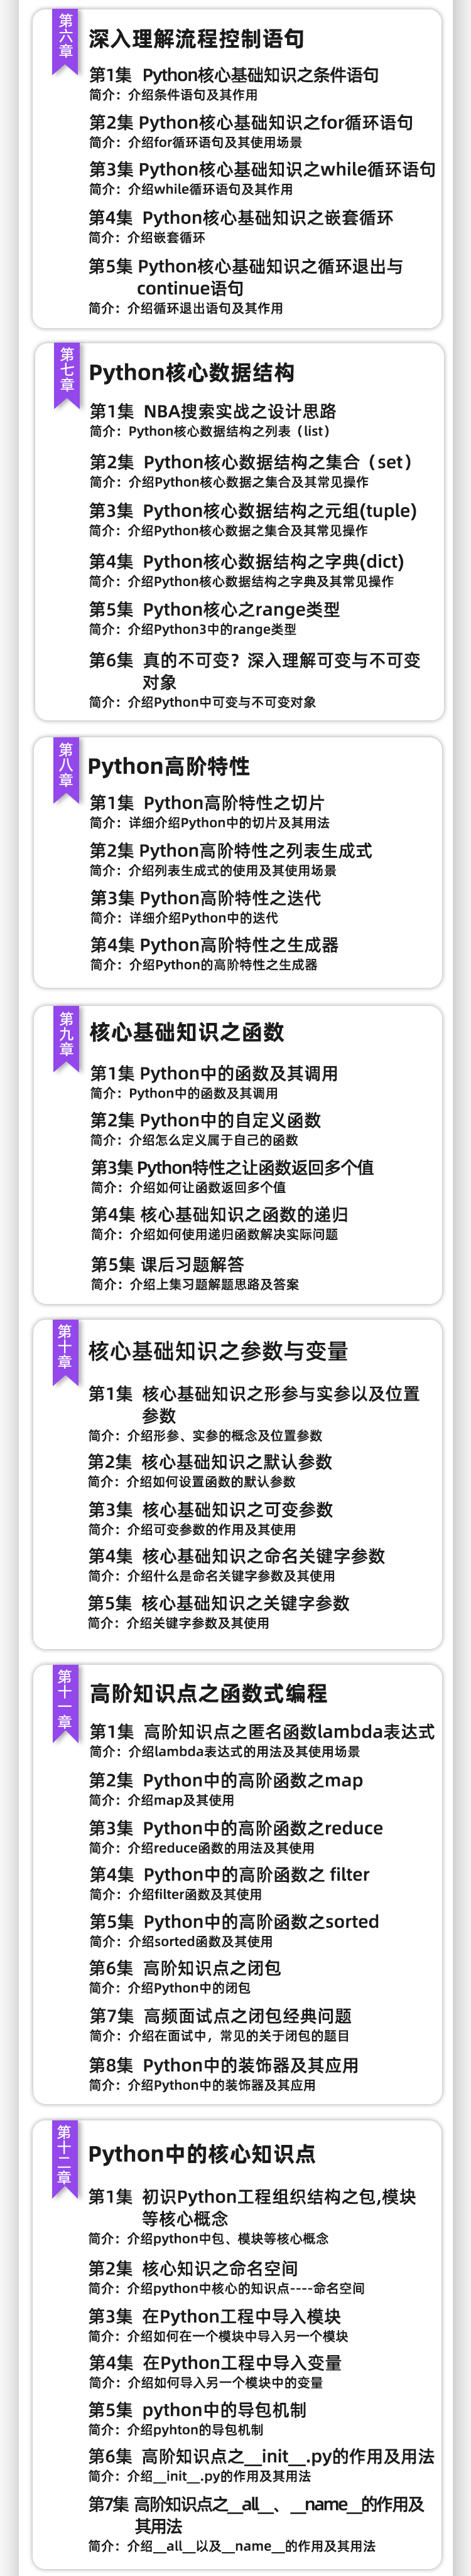 Python_05.jpg